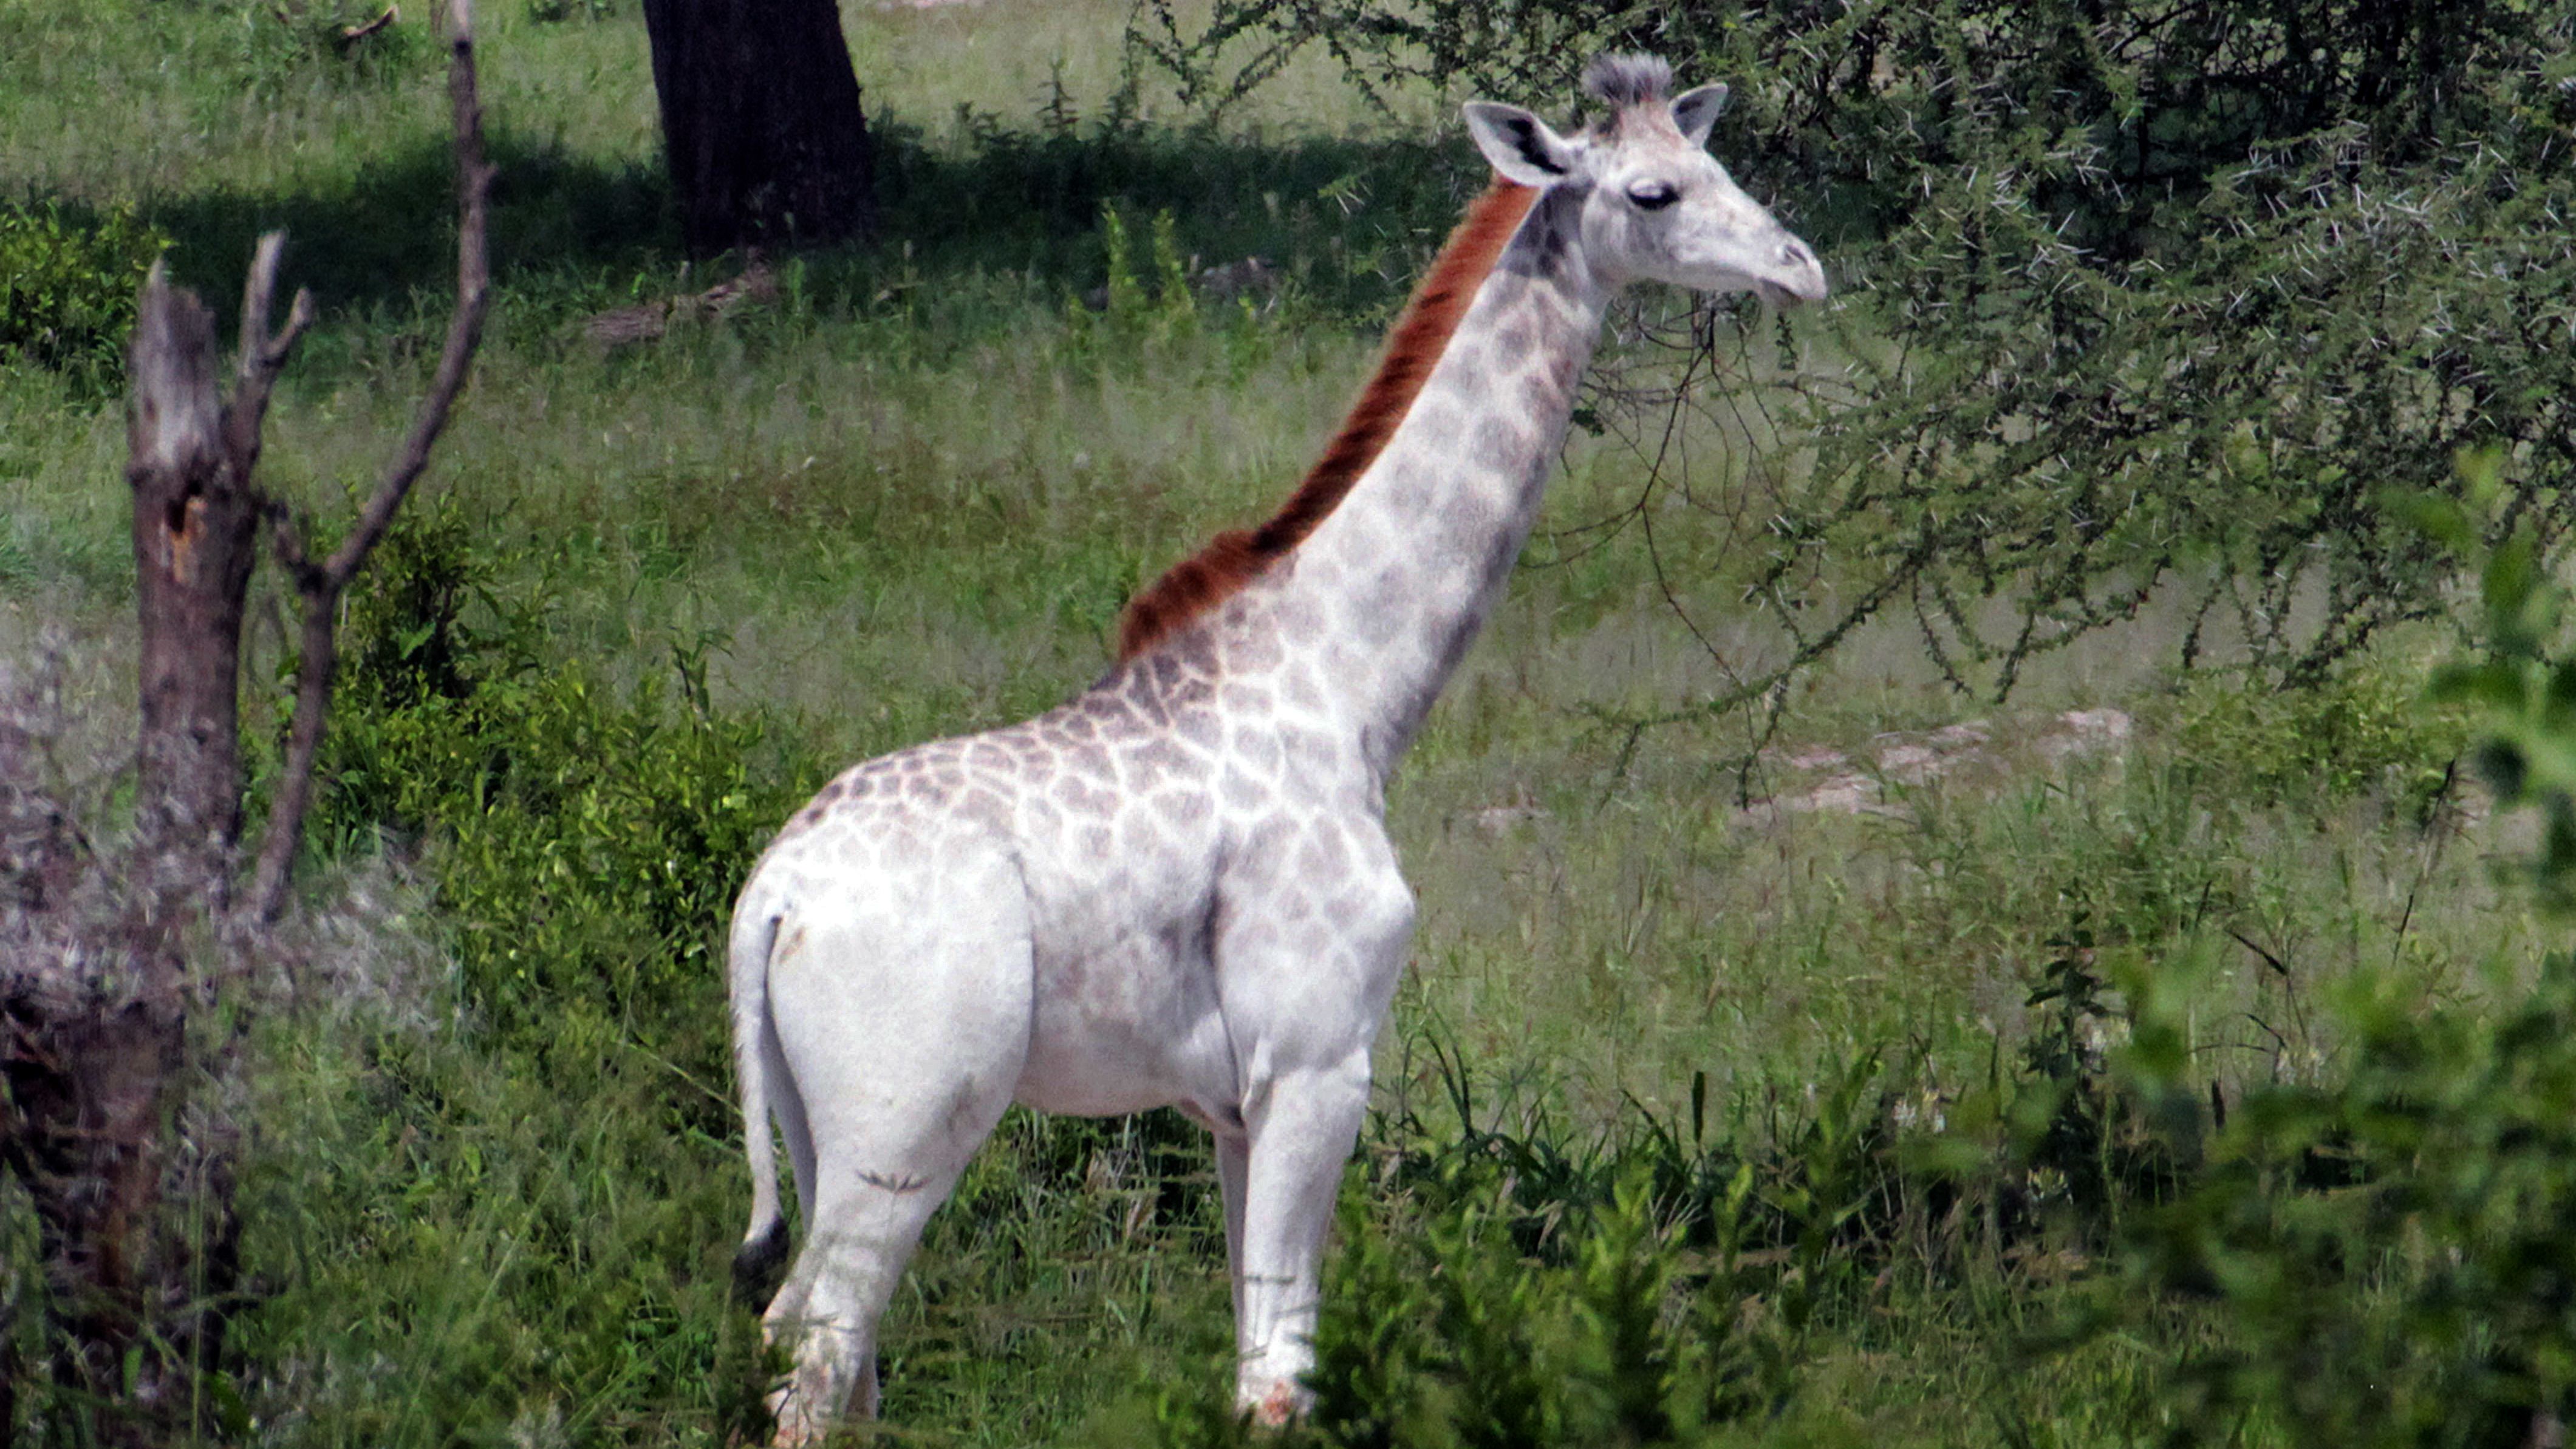  Omo, a snow-white, 15-month-old giraffe, has a rare condition called leucism.